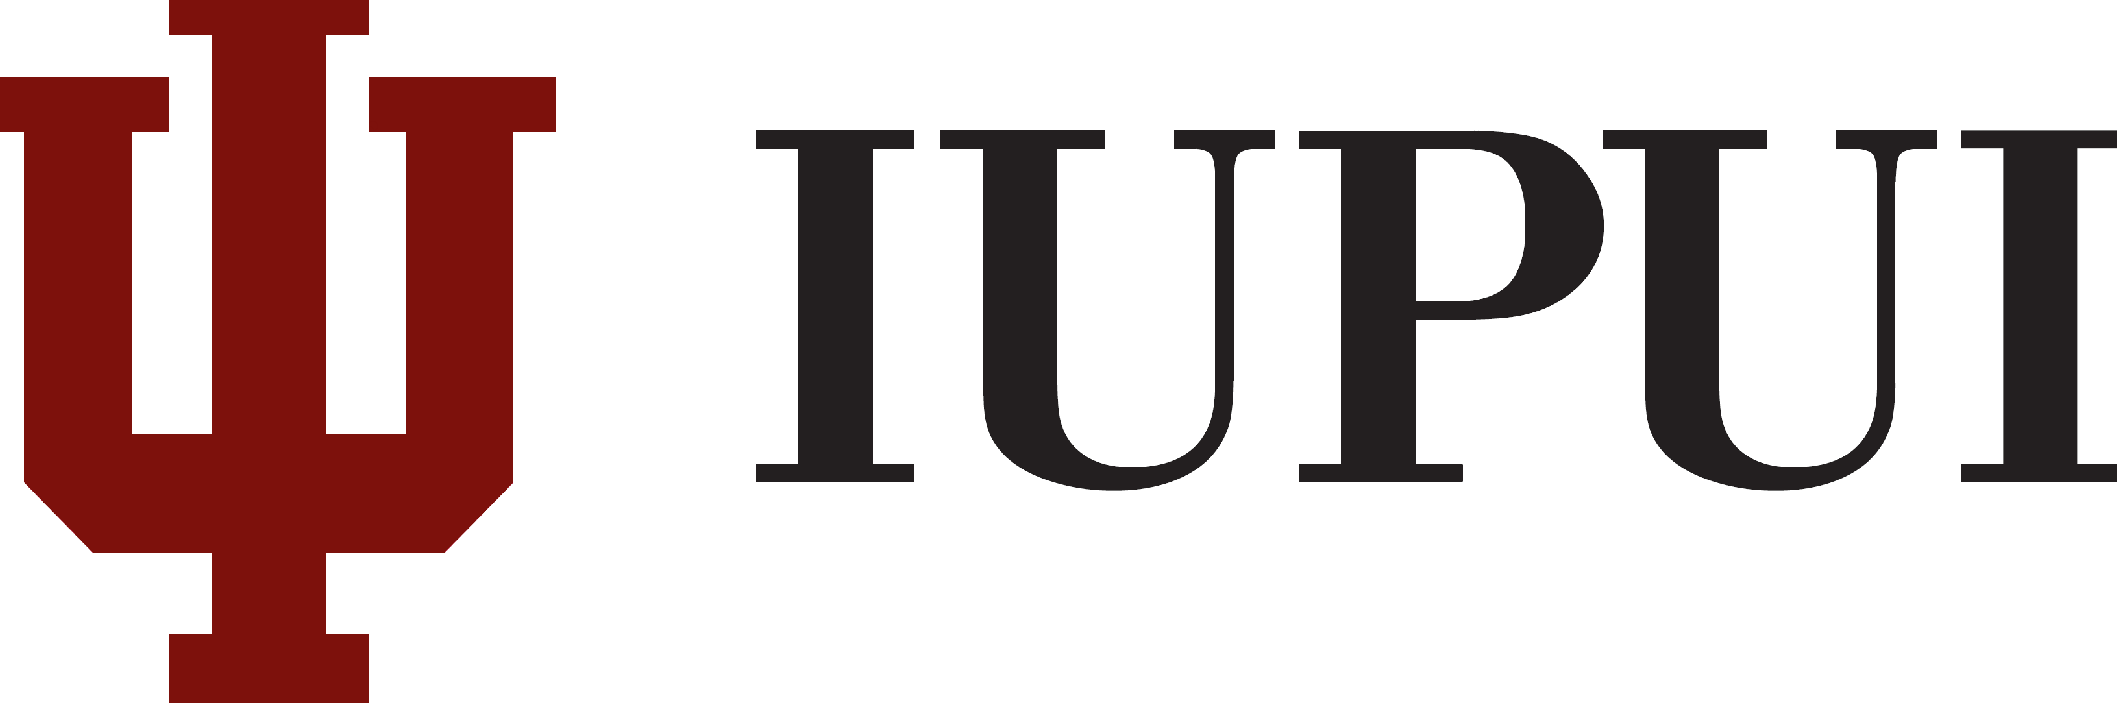 Iupui Wordmark - Indiana University Purdue University Indianapolis Logo (2117x703)